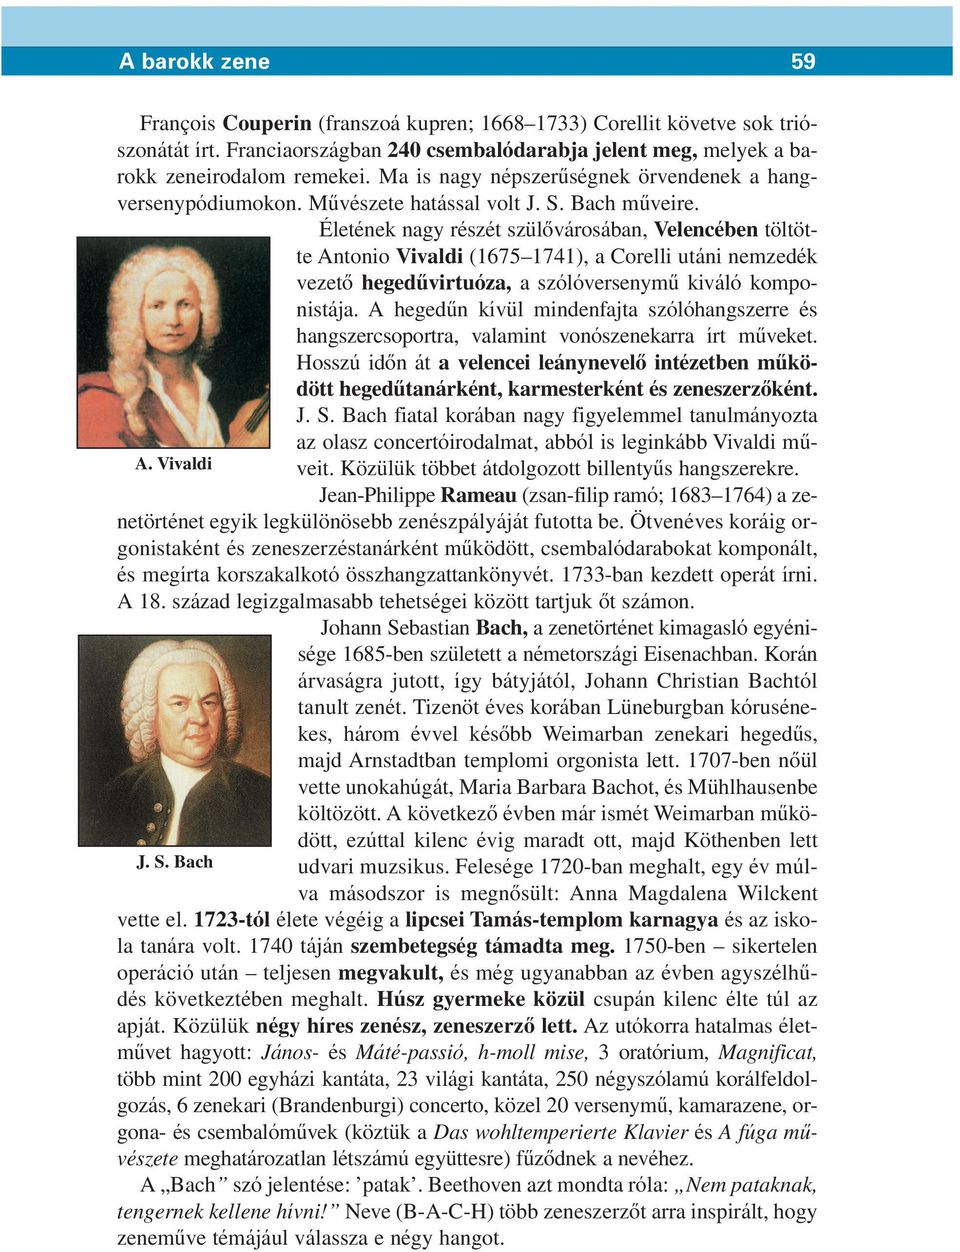 Életének nagy részét szülôvárosában, Velencében töltötte Antonio Vivaldi (1675 1741), a Corelli utáni nemzedék vezetô hegedûvirtuóza, a szólóversenymû kiváló komponistája.